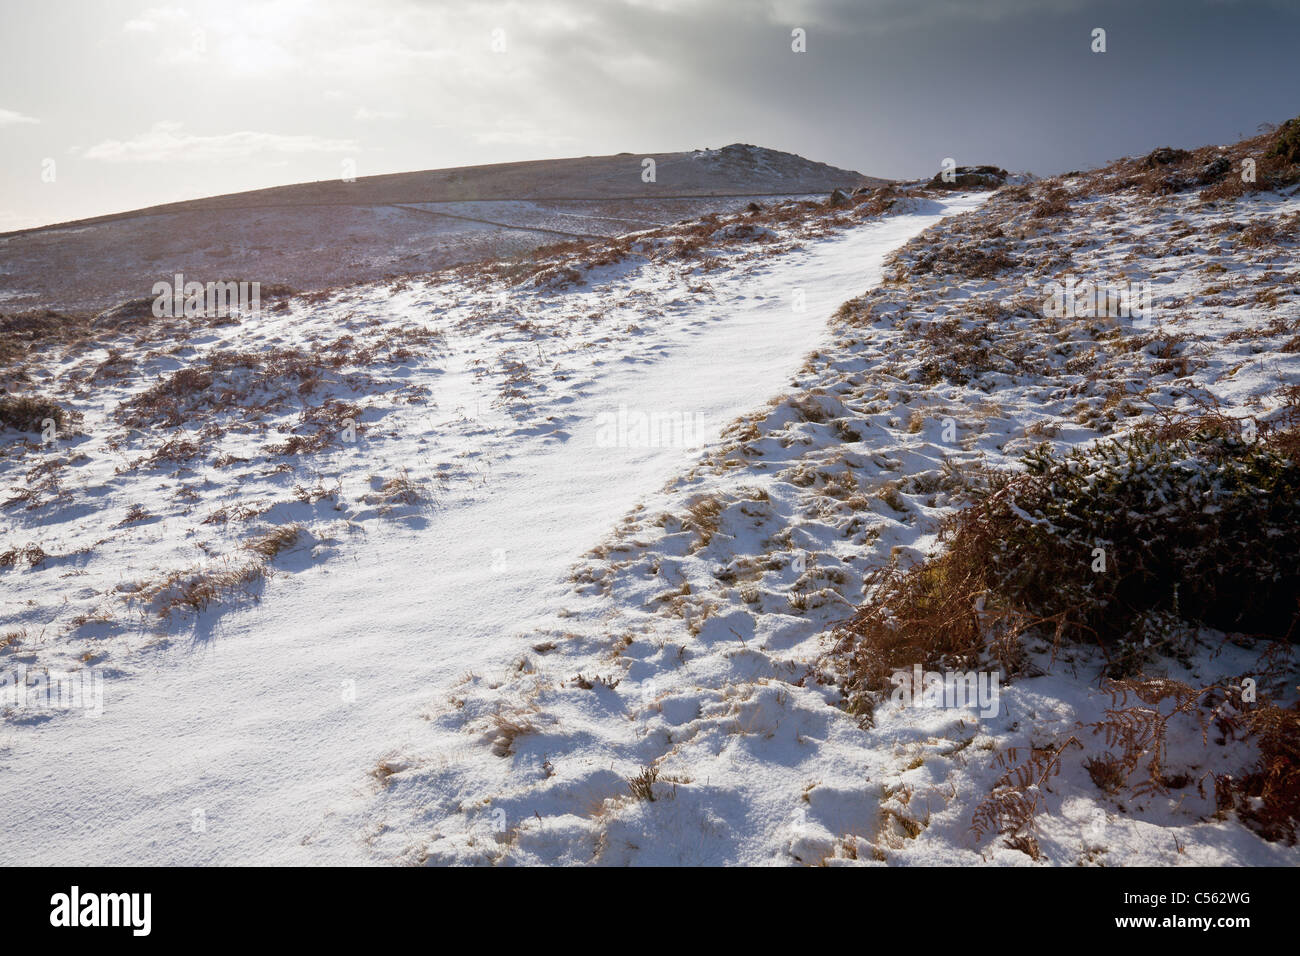 Dartmoor in Snow near Saddle Tor, Devon, England, UK Stock Photo